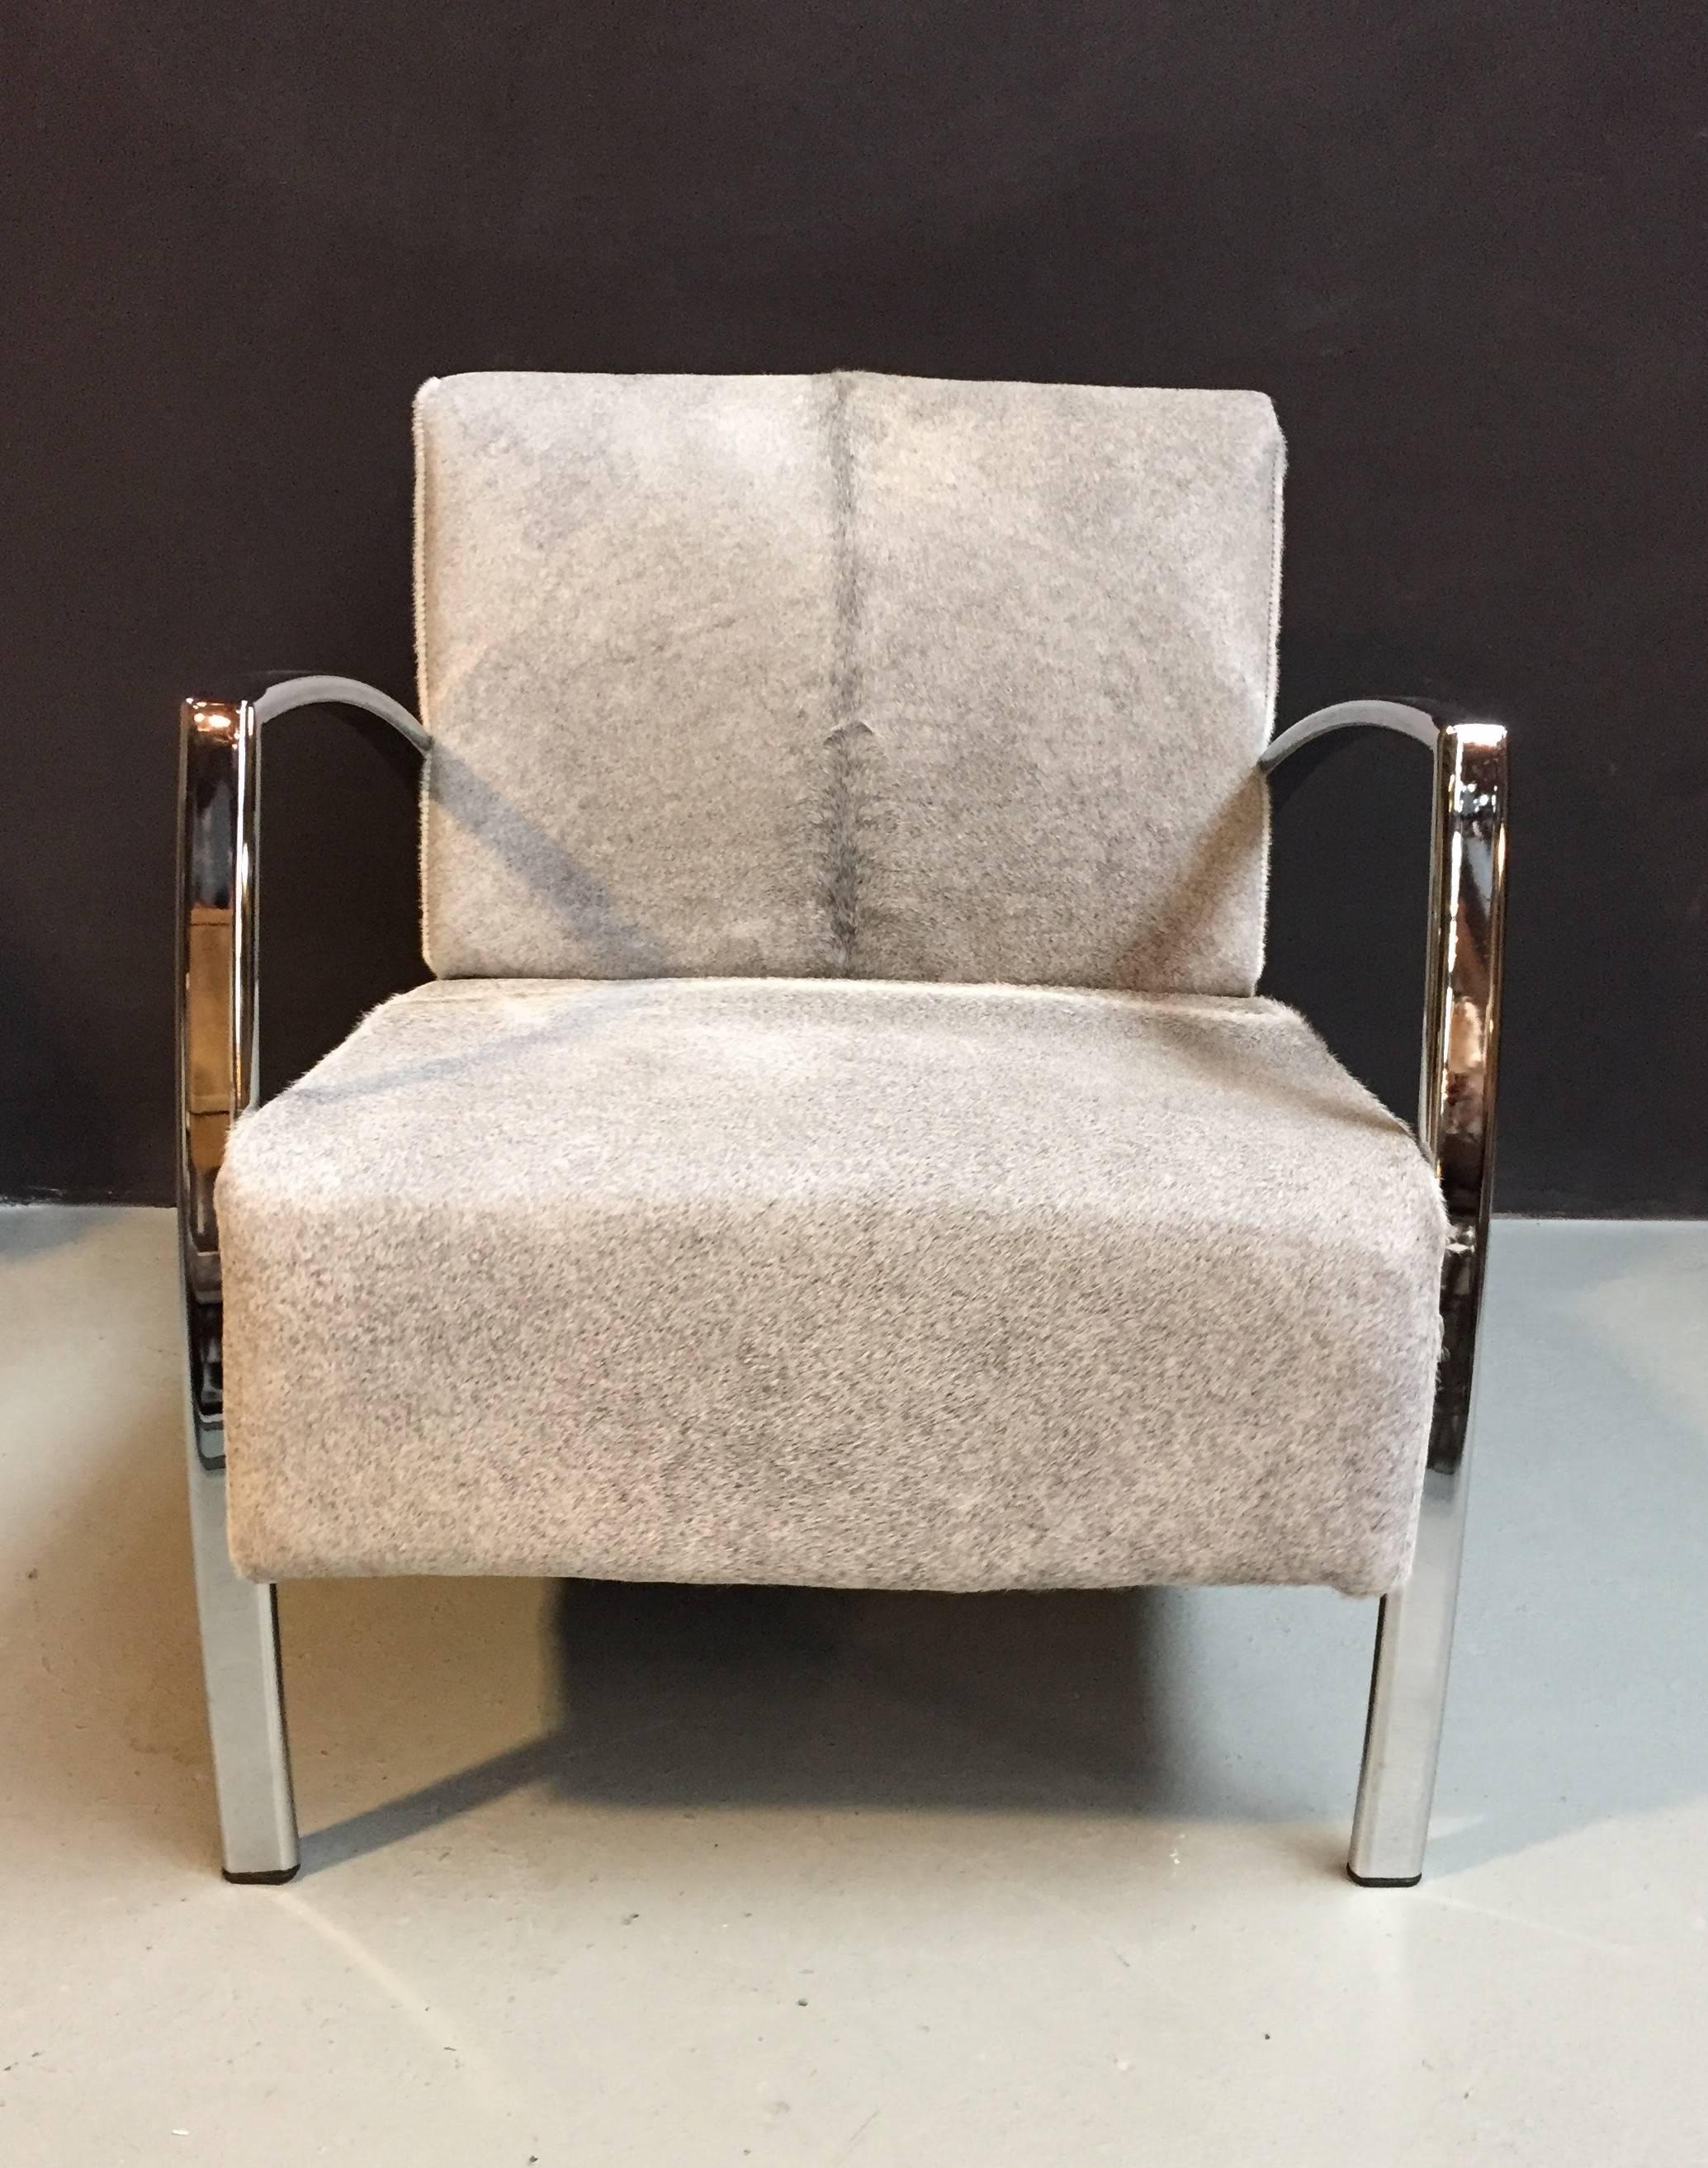 Cette chaise est recouverte d'un revêtement en peau de vache grise avec des accoudoirs et des pieds chromés.
